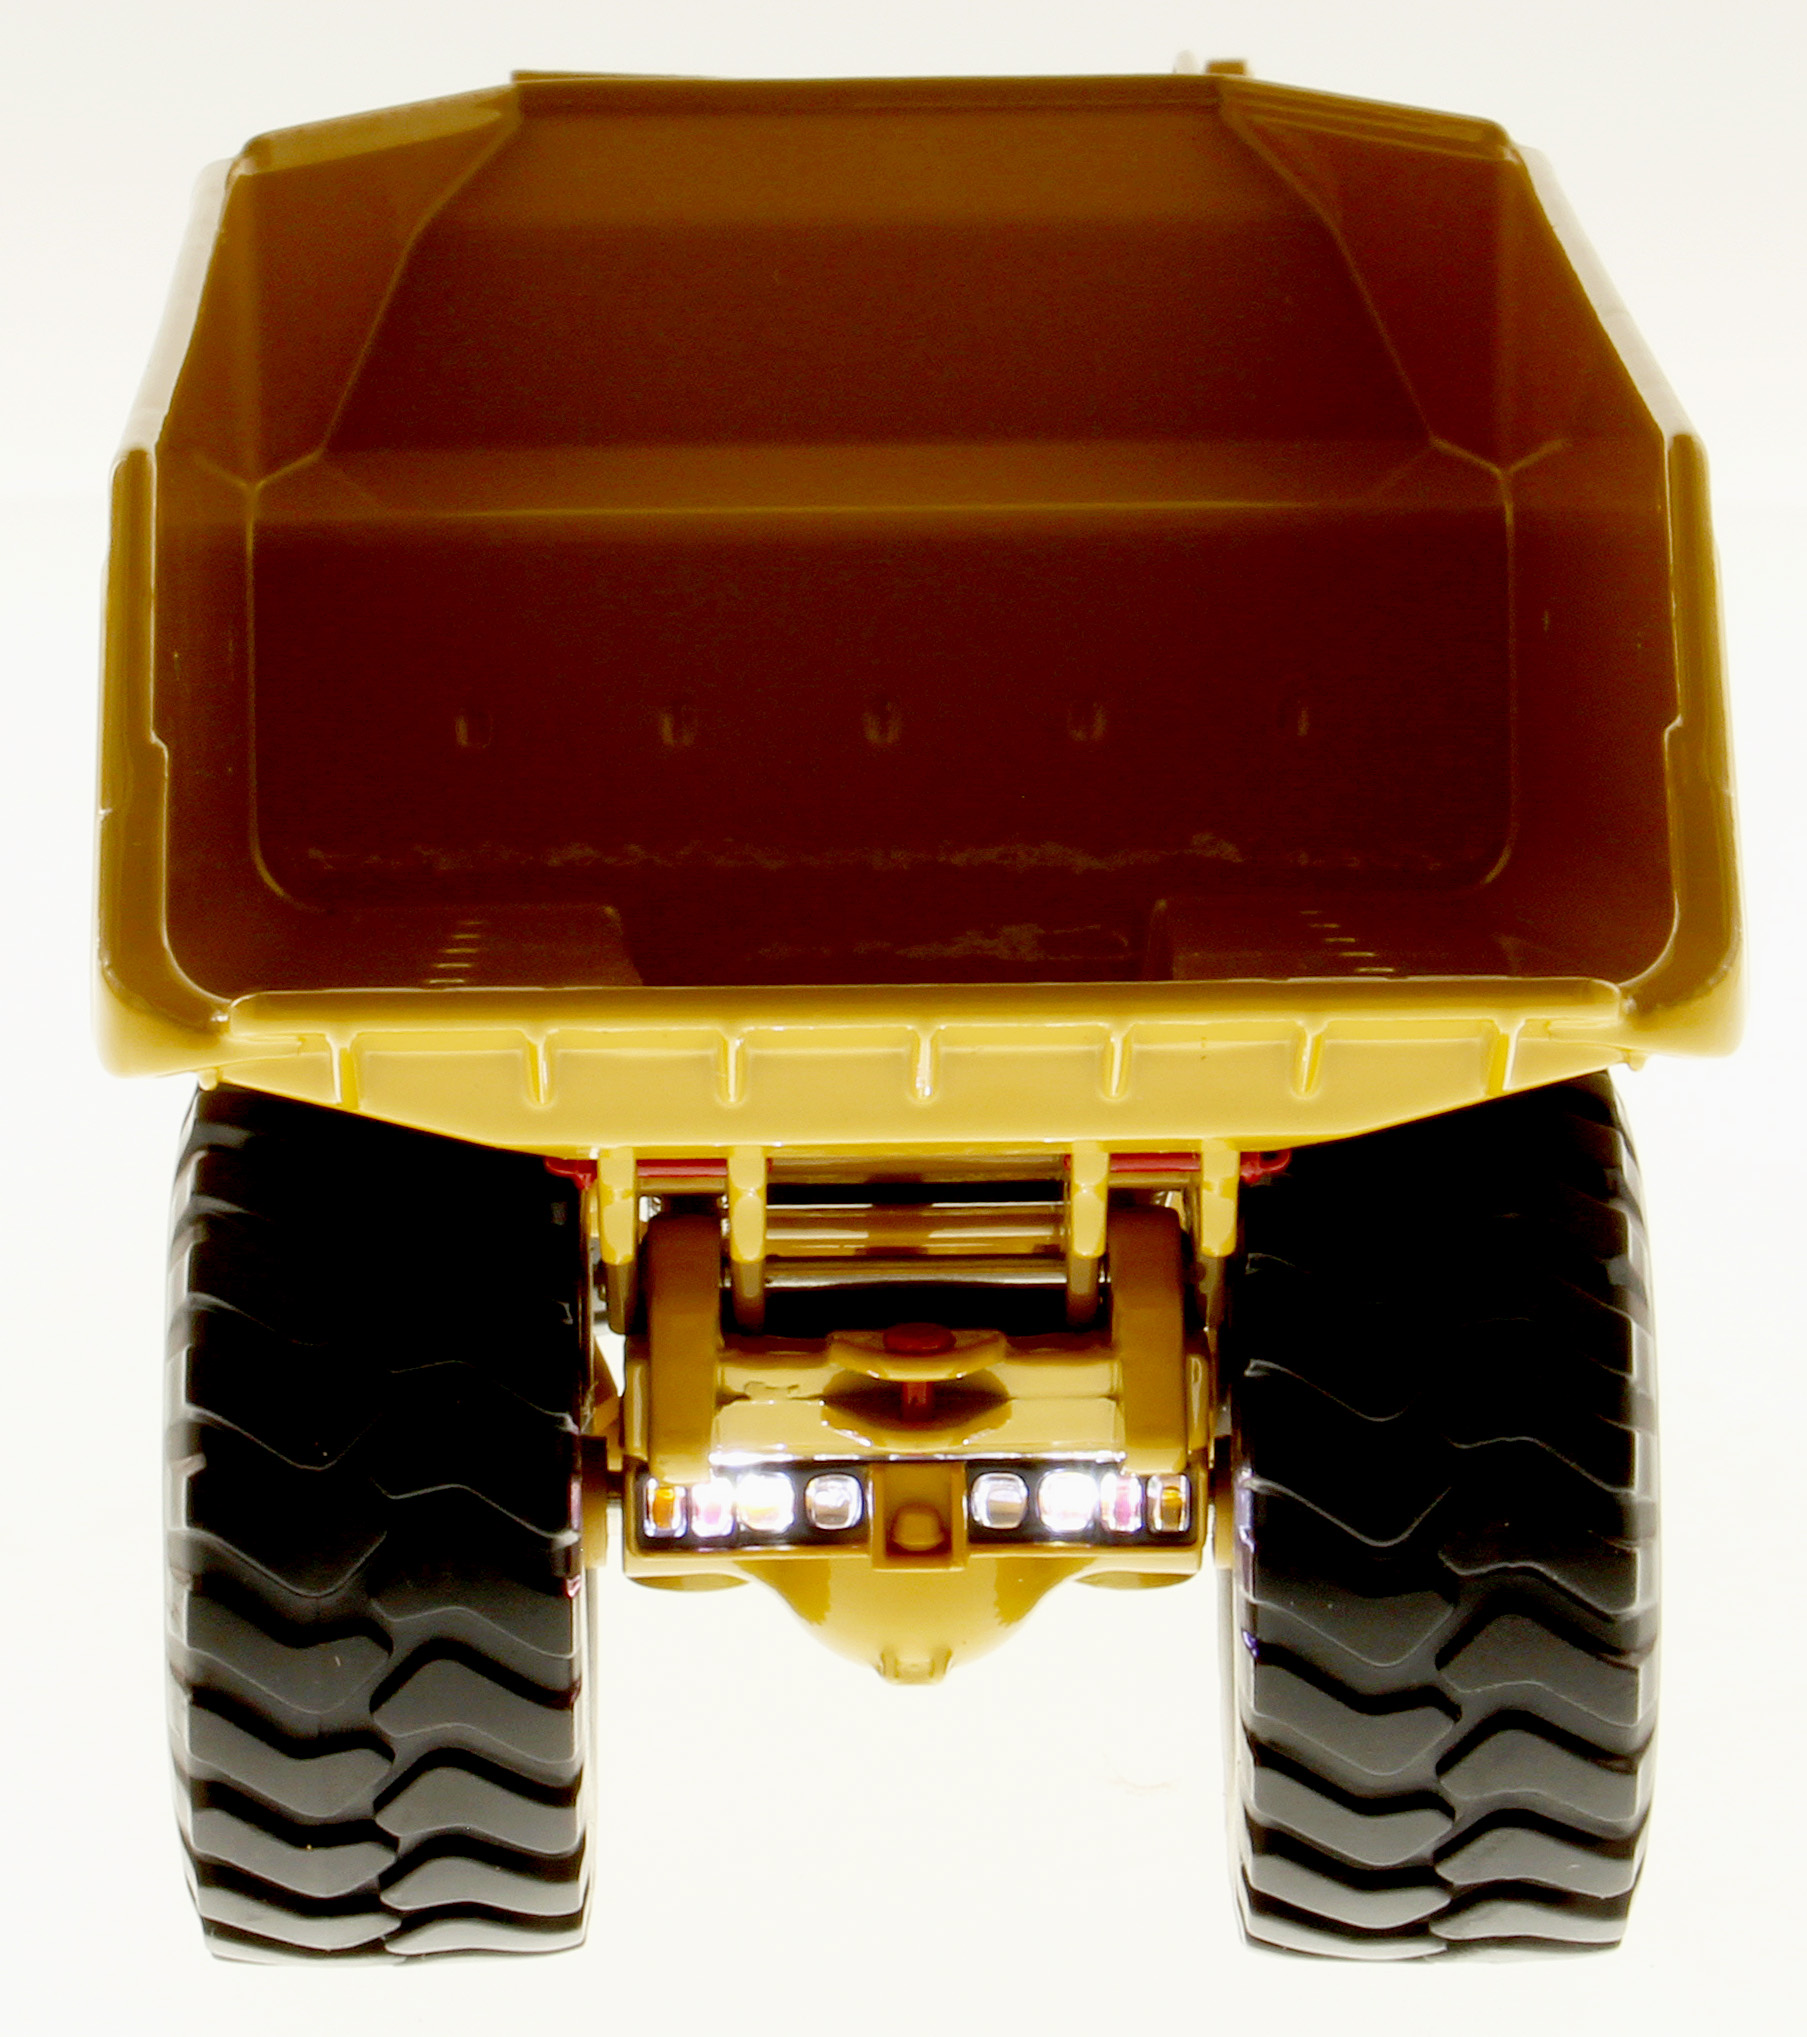 Miniatura Caminhão Articulado Subterrâneo Caterpillar Modelo AD60 Escala  1:50 - 85516 - Super Tek